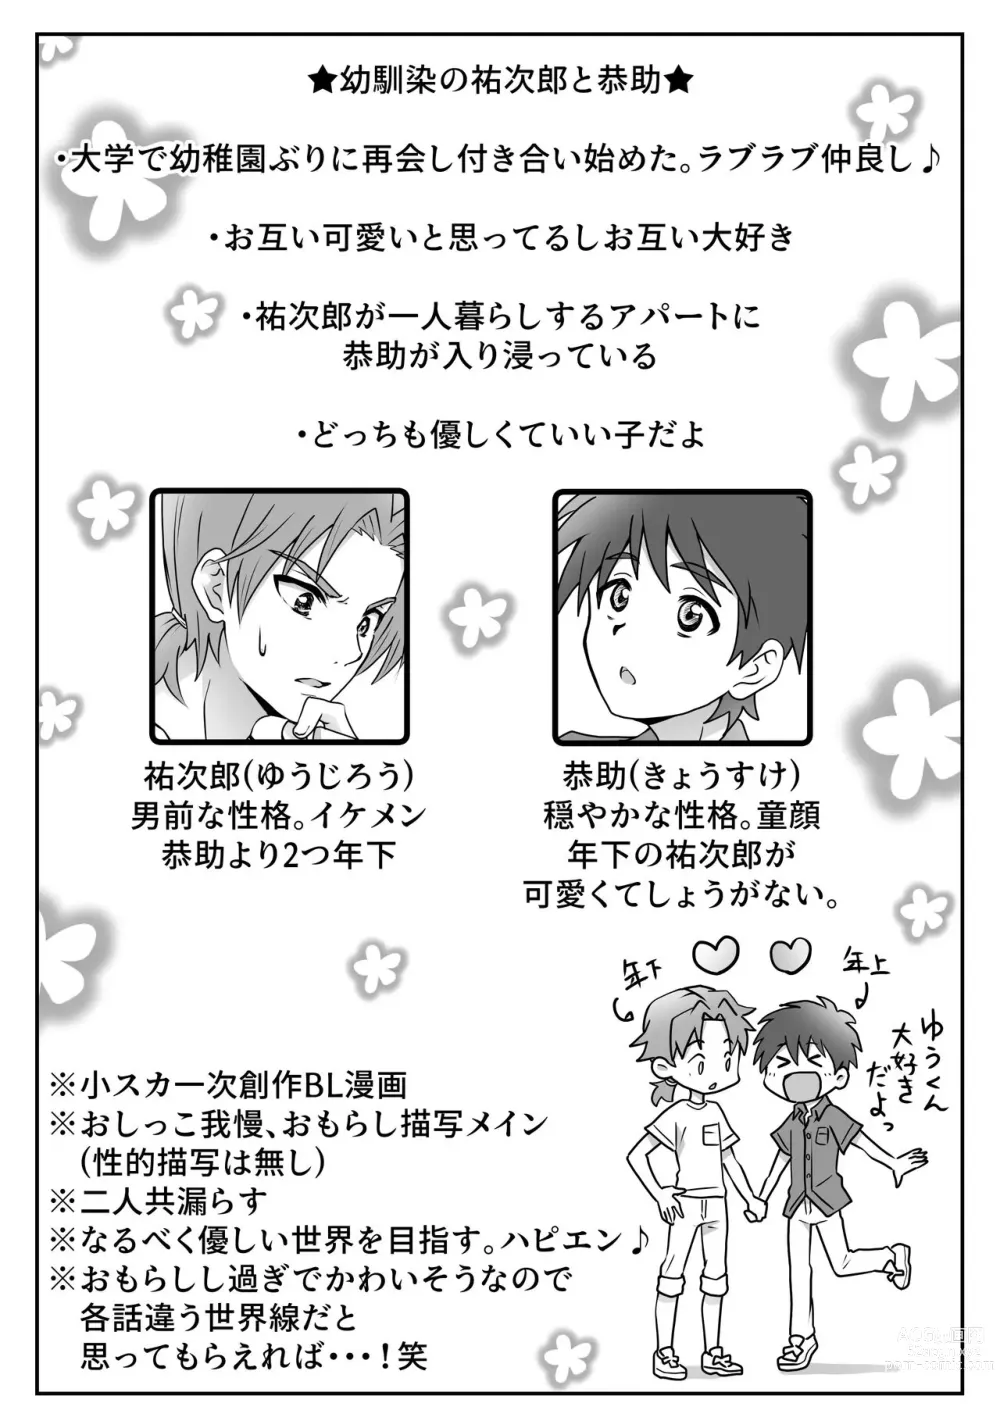 Page 3 of doujinshi Yuu-kun to Kyousuke